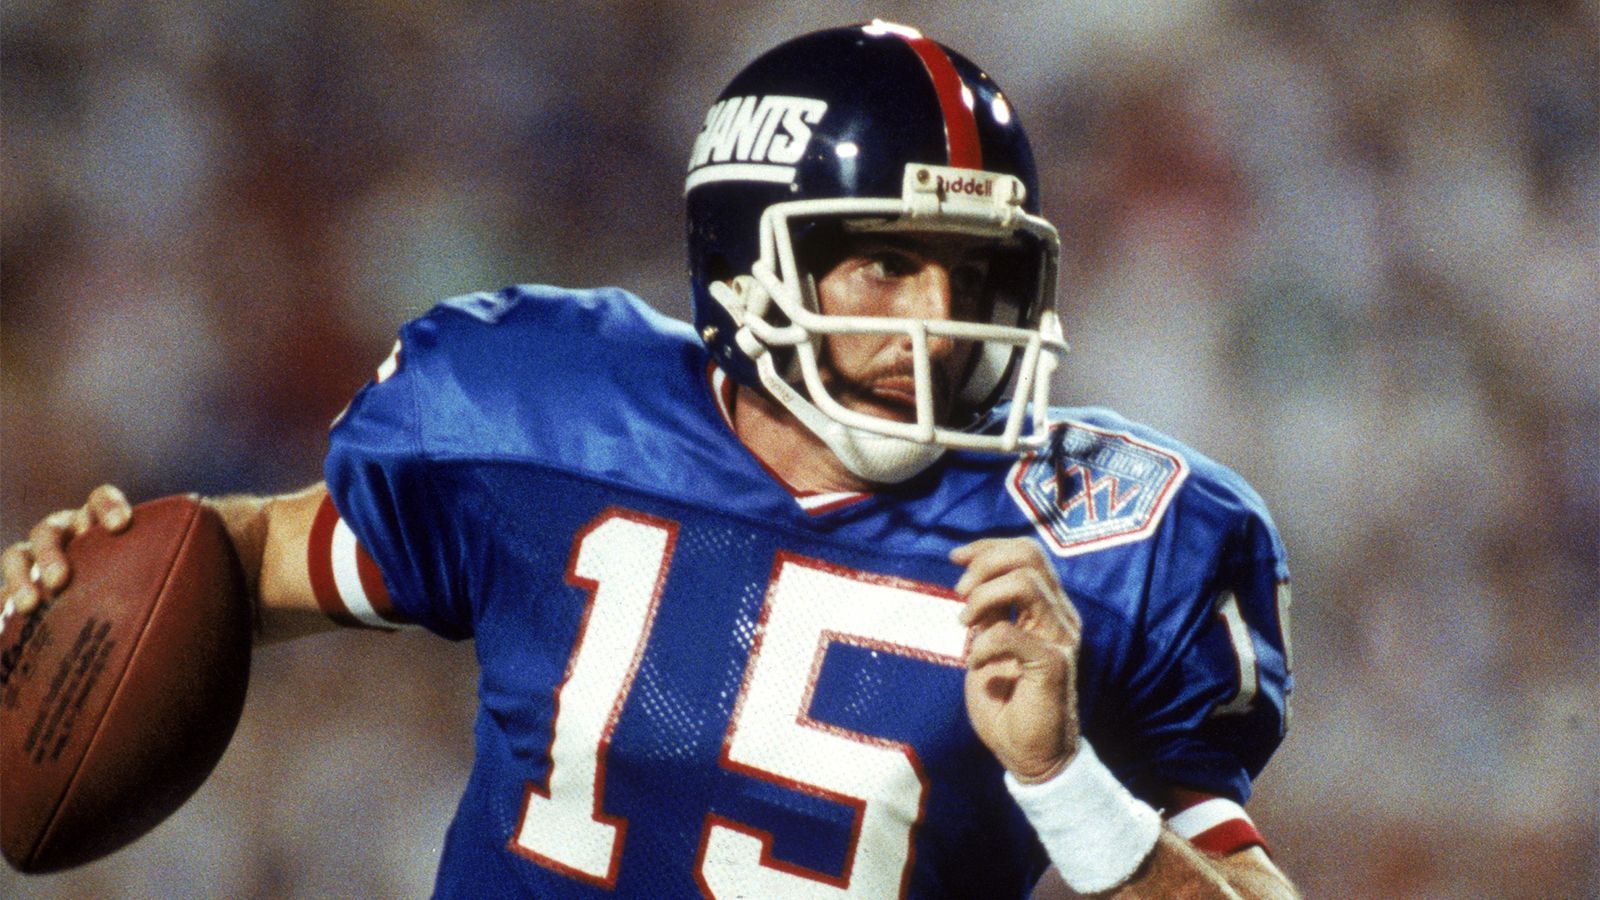 
                <strong>Jeff Hostetler (New York Giants, Saison 1990)</strong><br>
                Im Draft 1984 schlugen die Giants mit dem 59. Pick zu und sicherten sich Quarterback Hostetler. Sechs Jahre später verletzte sich dann Starter Phil Simms am Fuß in Week 15. Mit Hostetler konnte New York die letzten beiden Regular Season-Spiele gewinnen und triumphierte in Super Bowl XXV mit 20:19 gegen die Buffalo Bills.
              